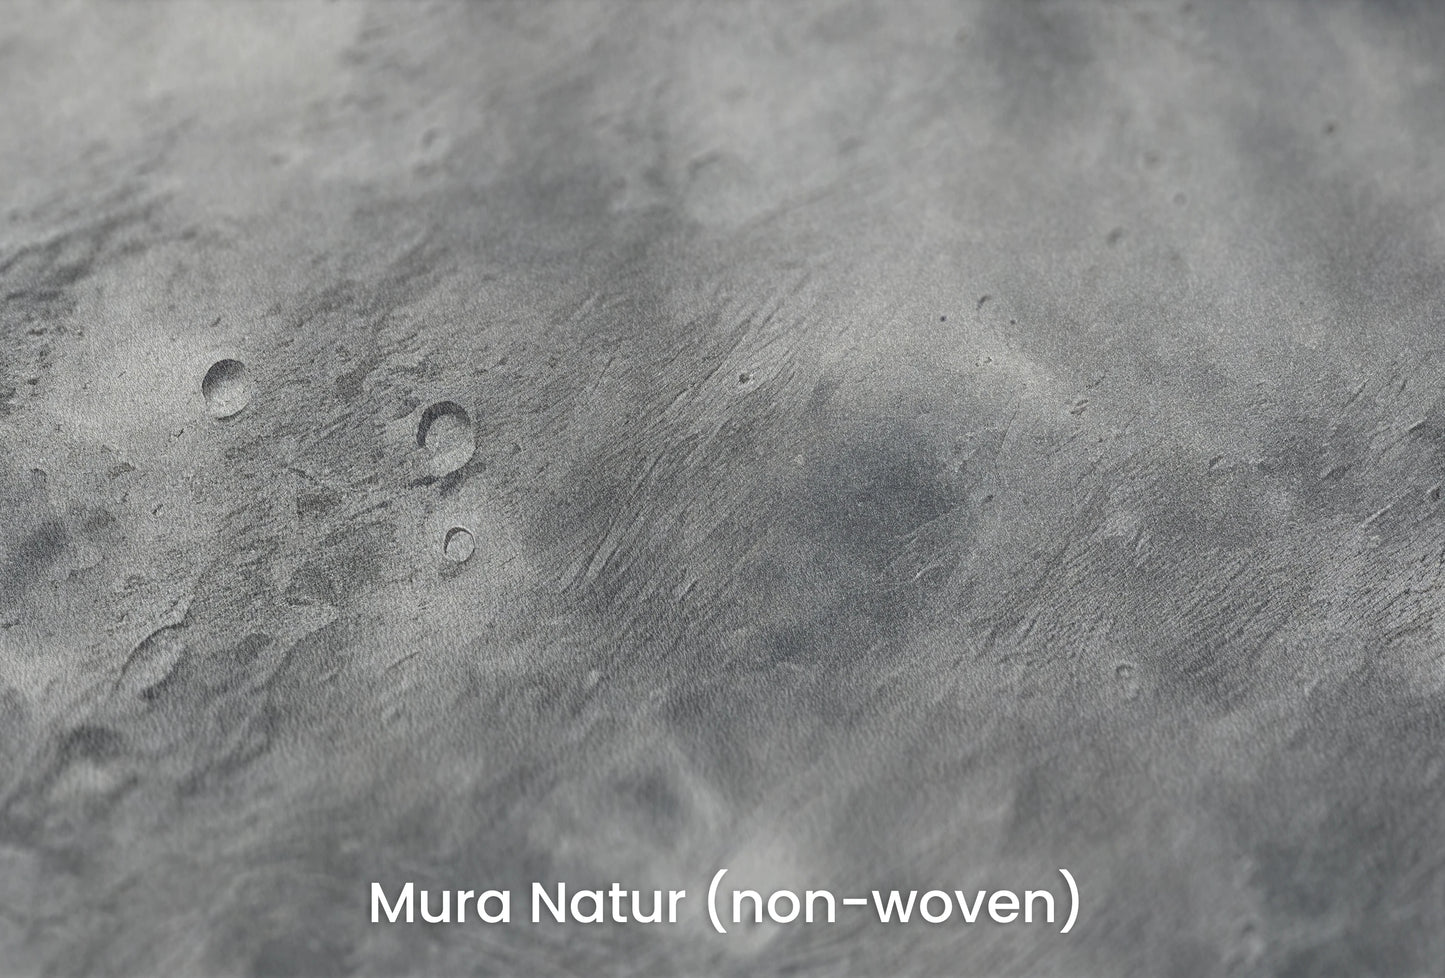 Zbliżenie na artystyczną fototapetę o nazwie Mercury's Crust na podłożu Mura Natur (non-woven) - naturalne i ekologiczne podłoże.